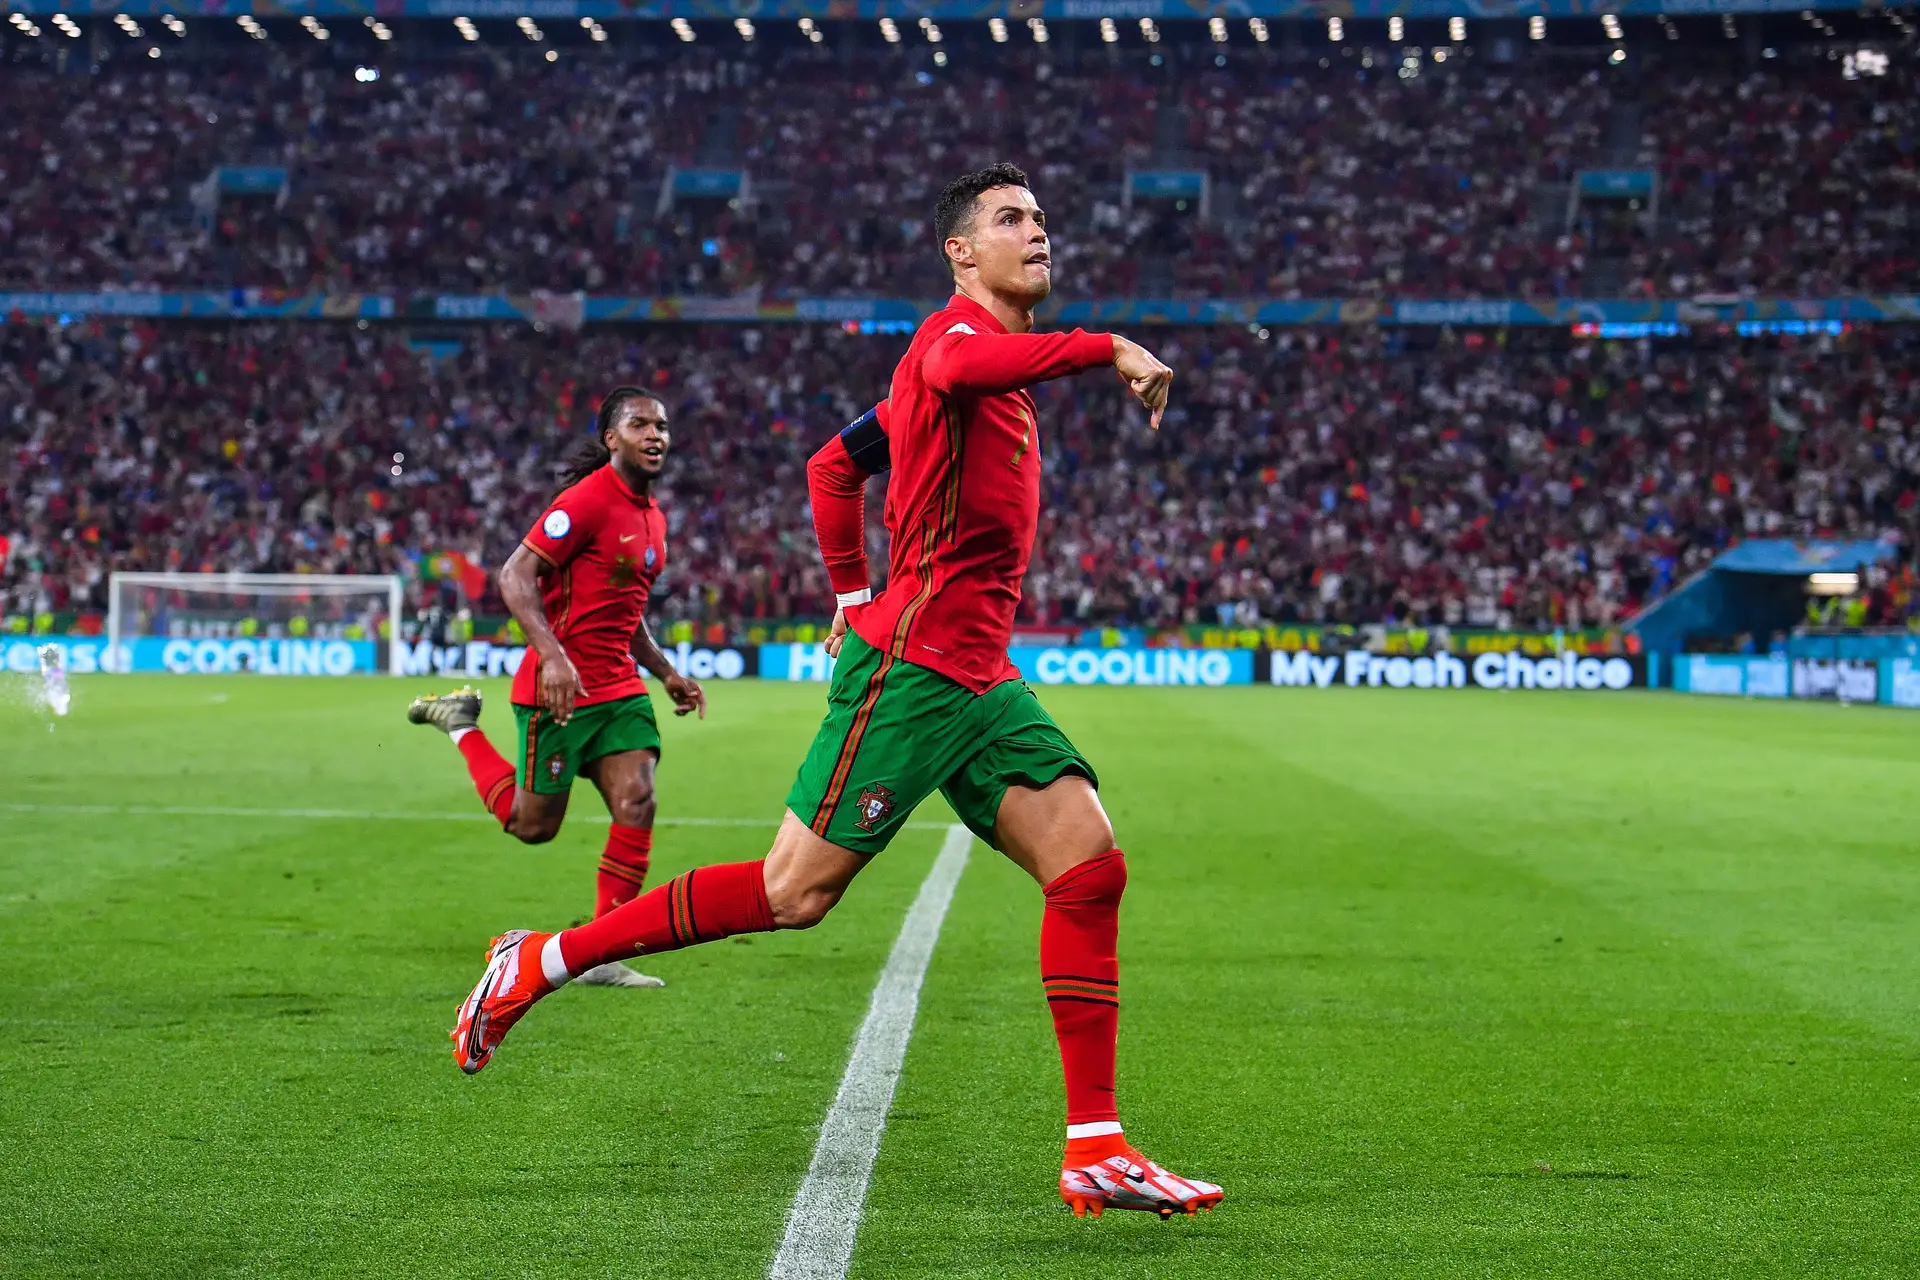 Bis de Ronaldo garante Portugal nos oitavos-de-final, UEFA EURO